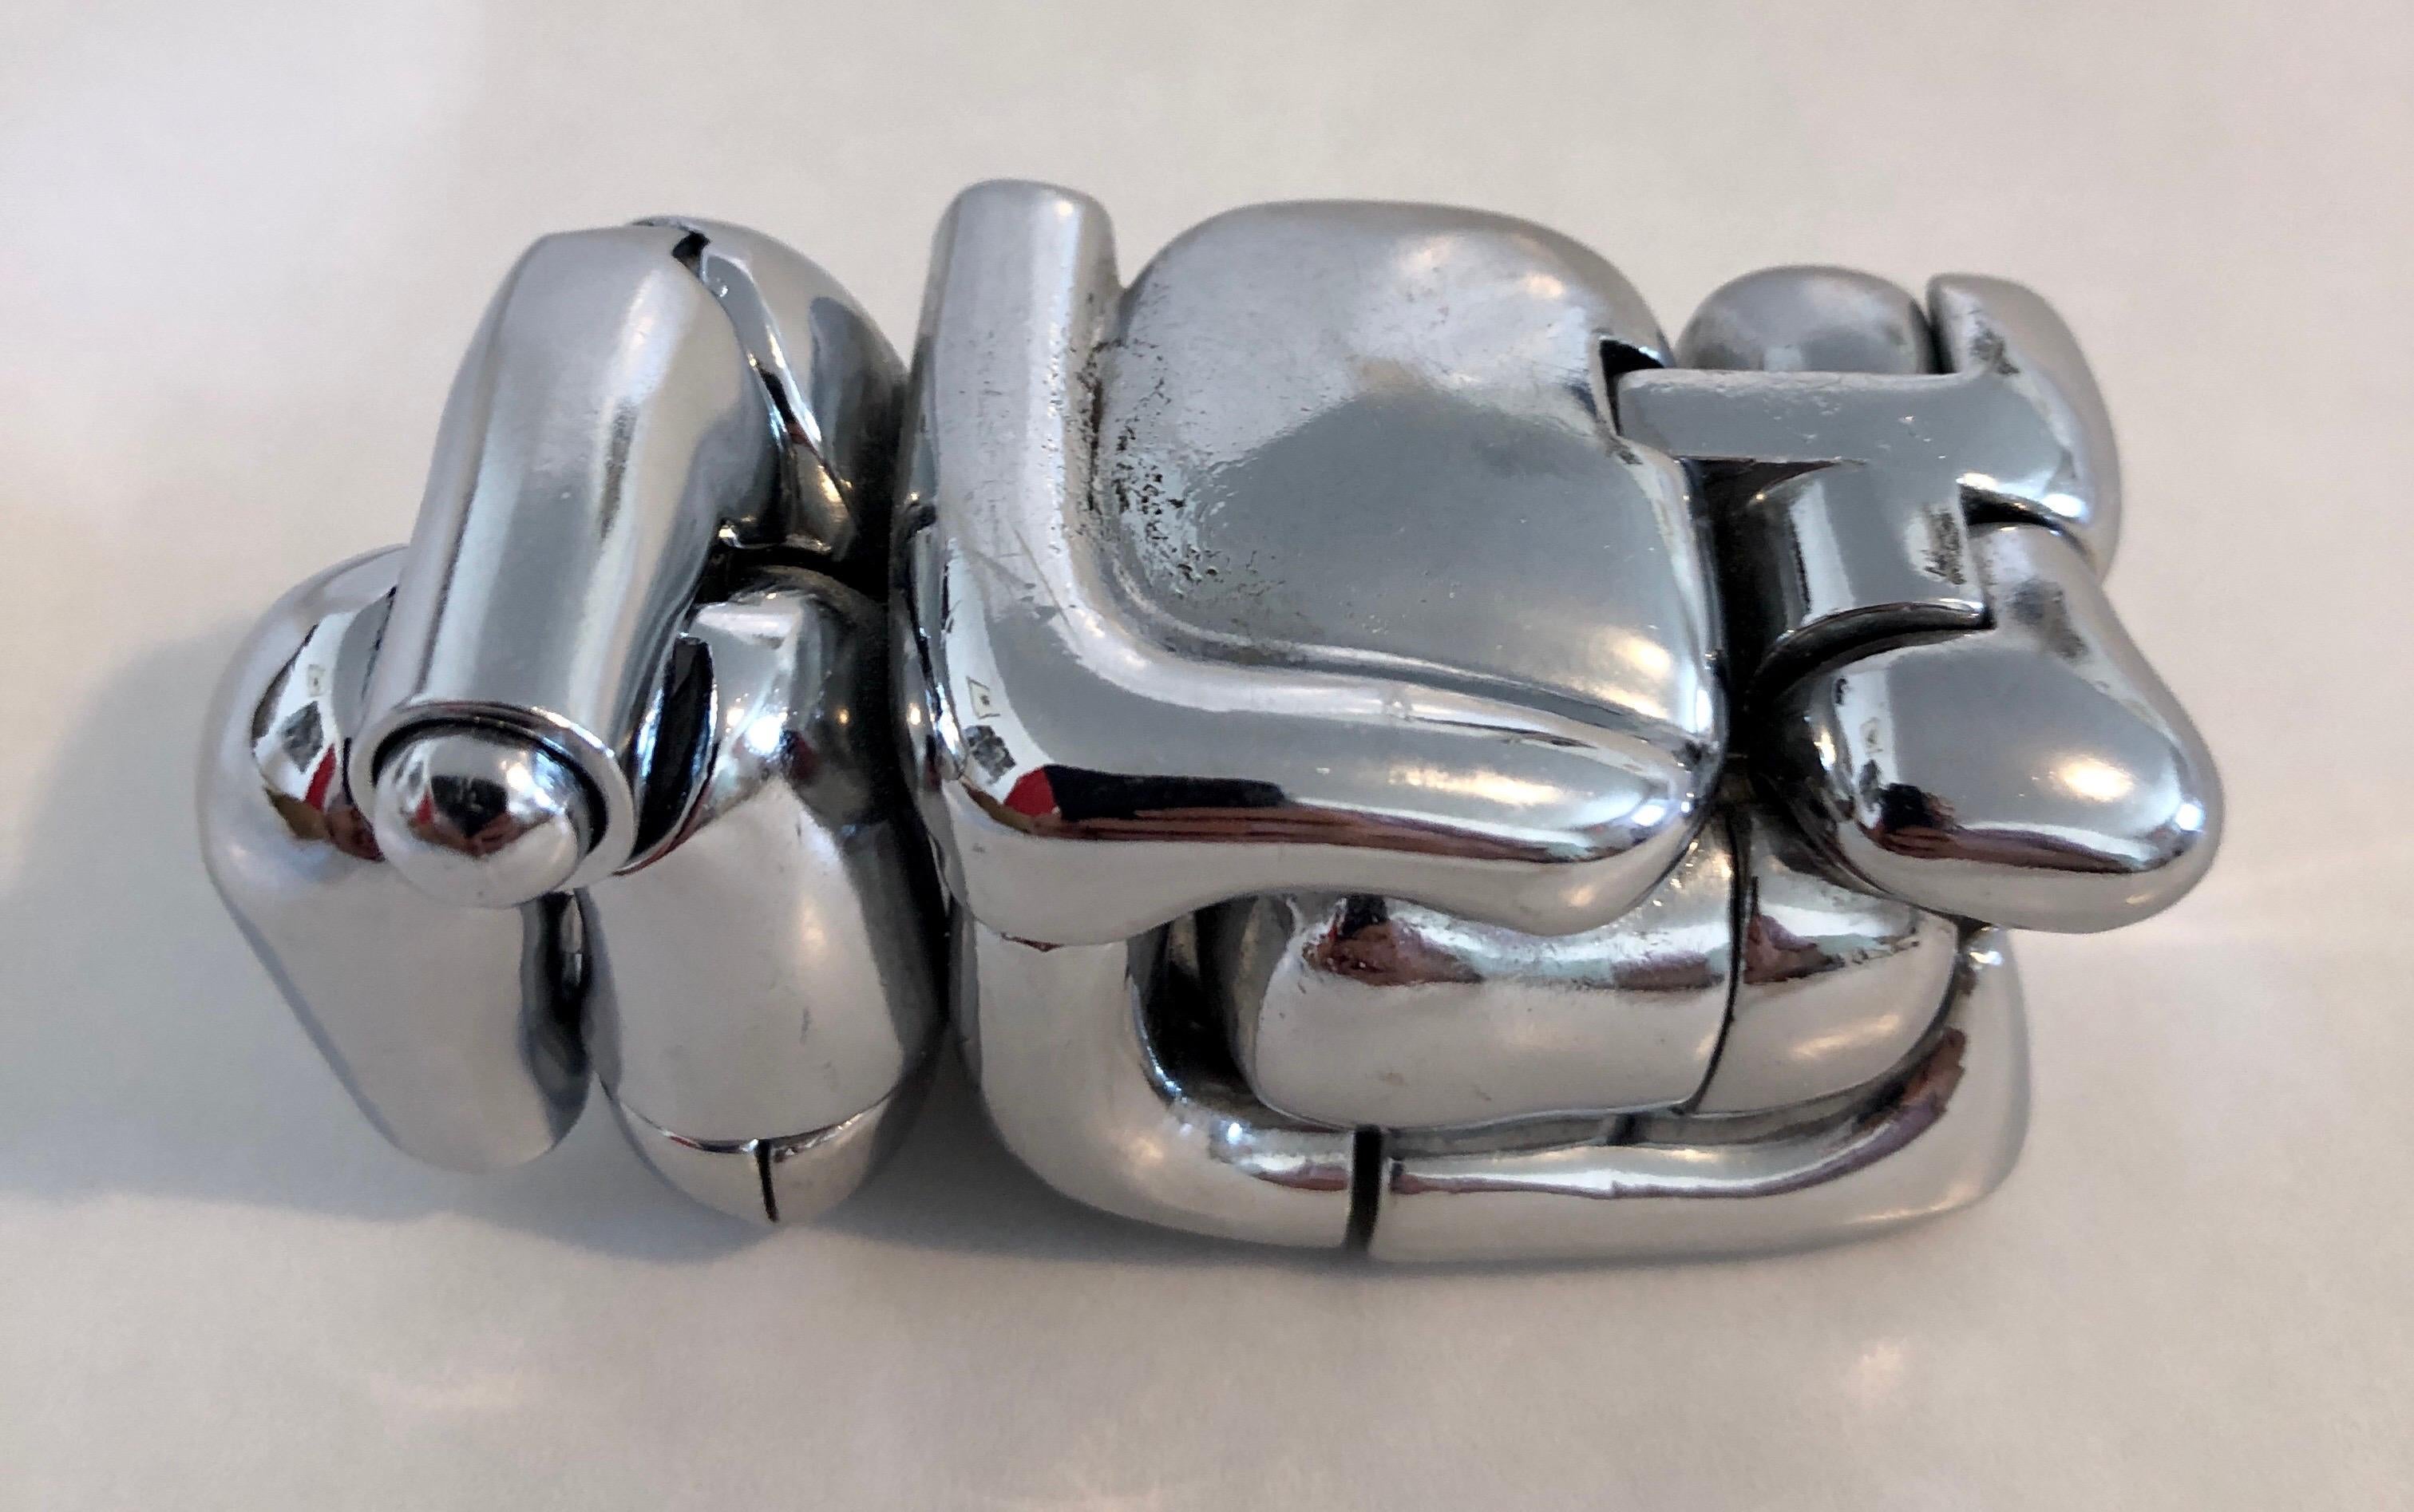 Mini Maria Opus 108 micro-sculpture puzzle modelée comme un nu féminin abstrait avec anneau secret par Miguel Berrocal (espagnol:: 1933-2006).  Signé et numéroté. Ne comprend pas la boîte ou le socle d'origine. Il est arrivé tel quel. 
Acier